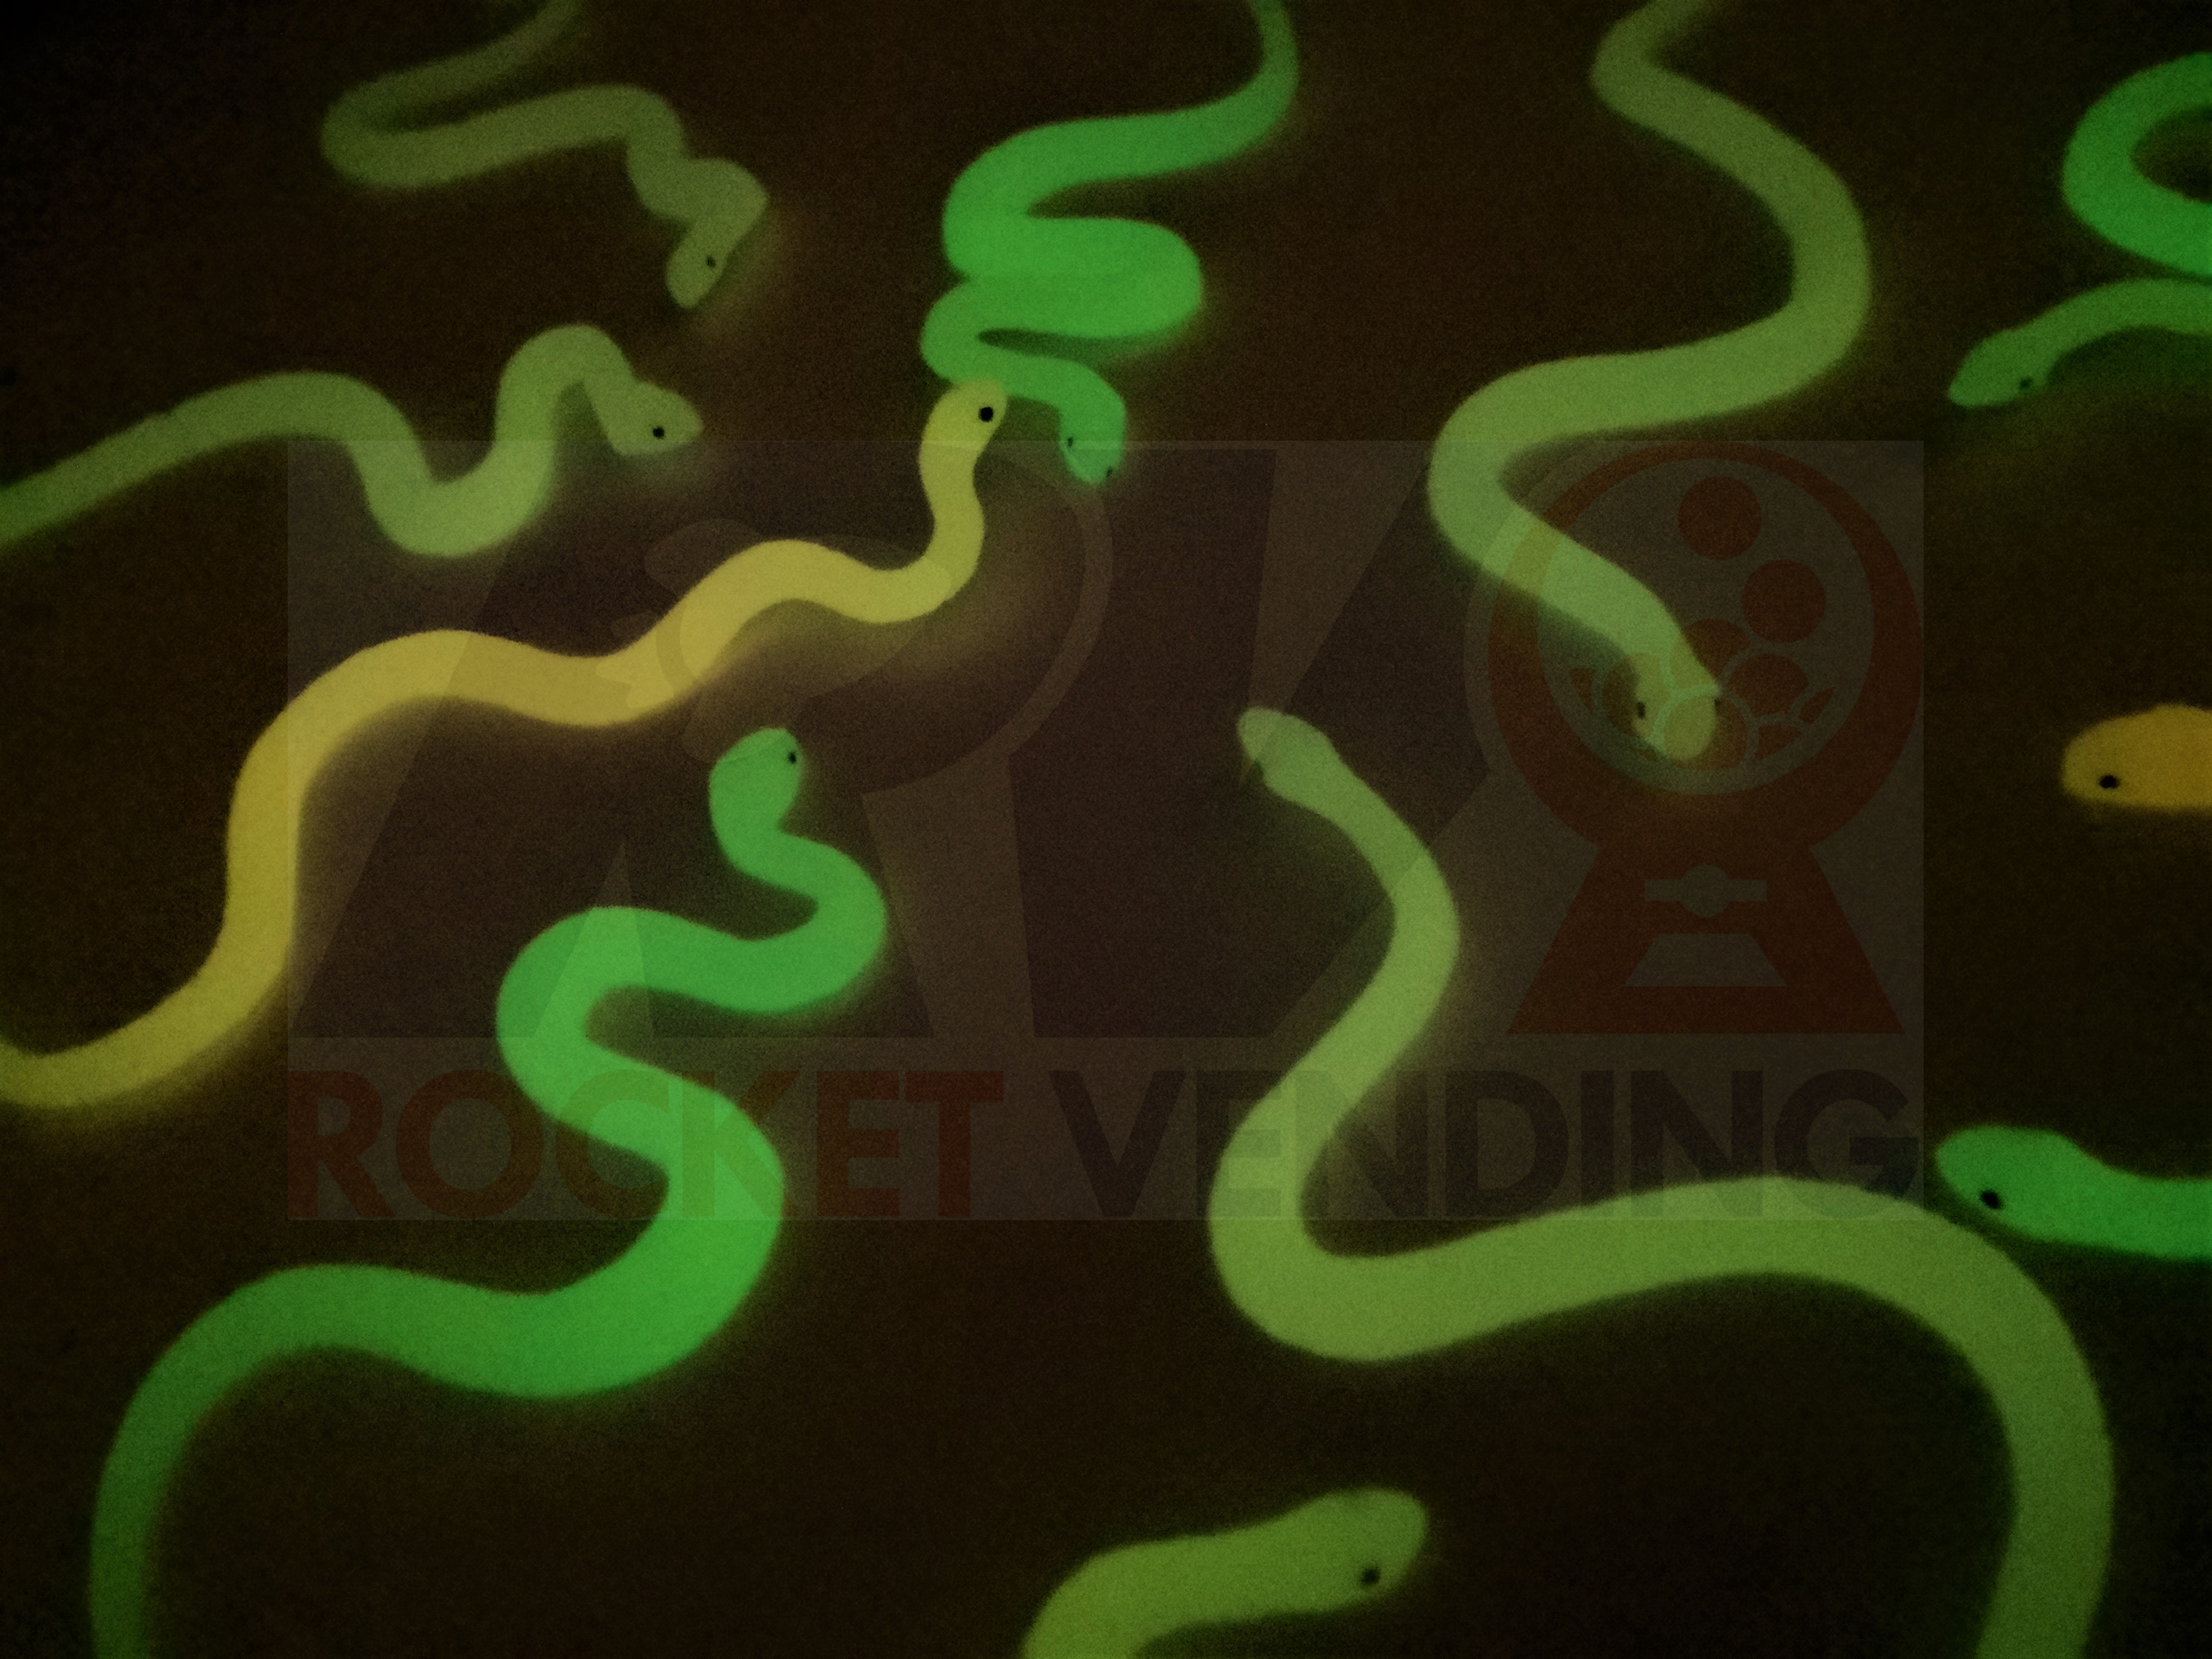 50 Serpientes o viboritas  encapsuladas 2 pulgadas Brillan en la oscuridad juguete 2p - Rocket Vending Todo en Chicleras